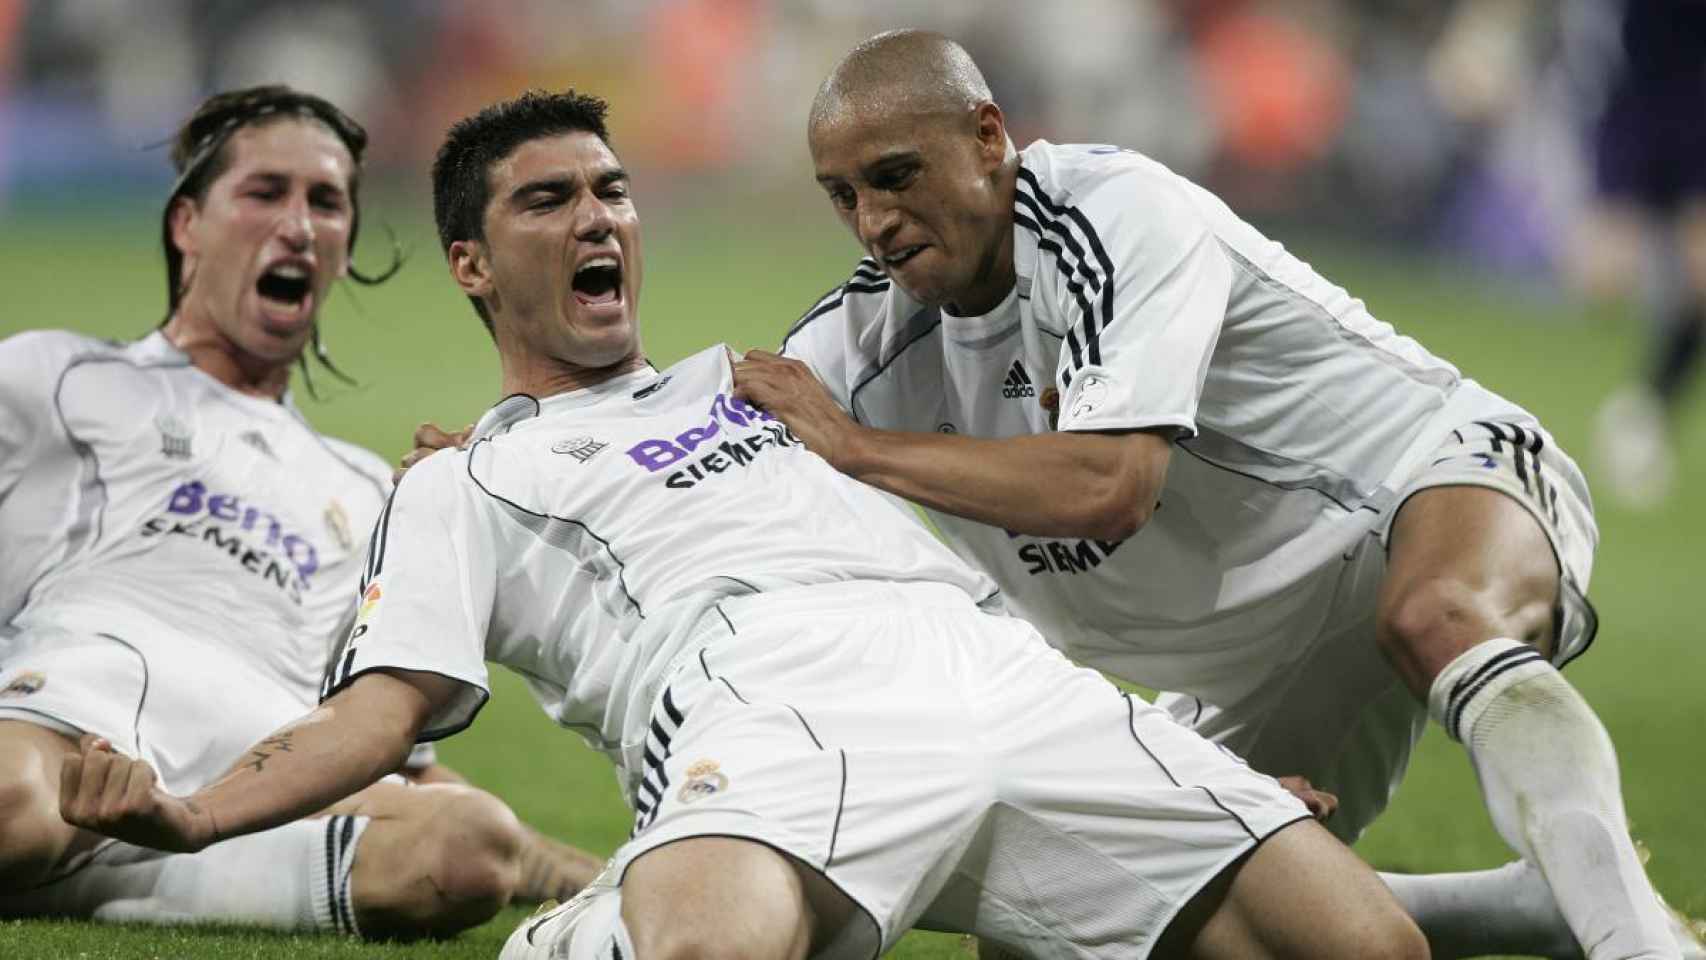 Reyes celebra con sus compañeros Sergio Ramos  y Roberto Carlos  tras marcar el tercer gol de su equipo al RC Mallorca, en el partido correspondiente a la última jornada de Primera División disputado en el Estadio Santiago Bernabéu en 2007. Un gol que permitió a los blancos ganar La Liga.